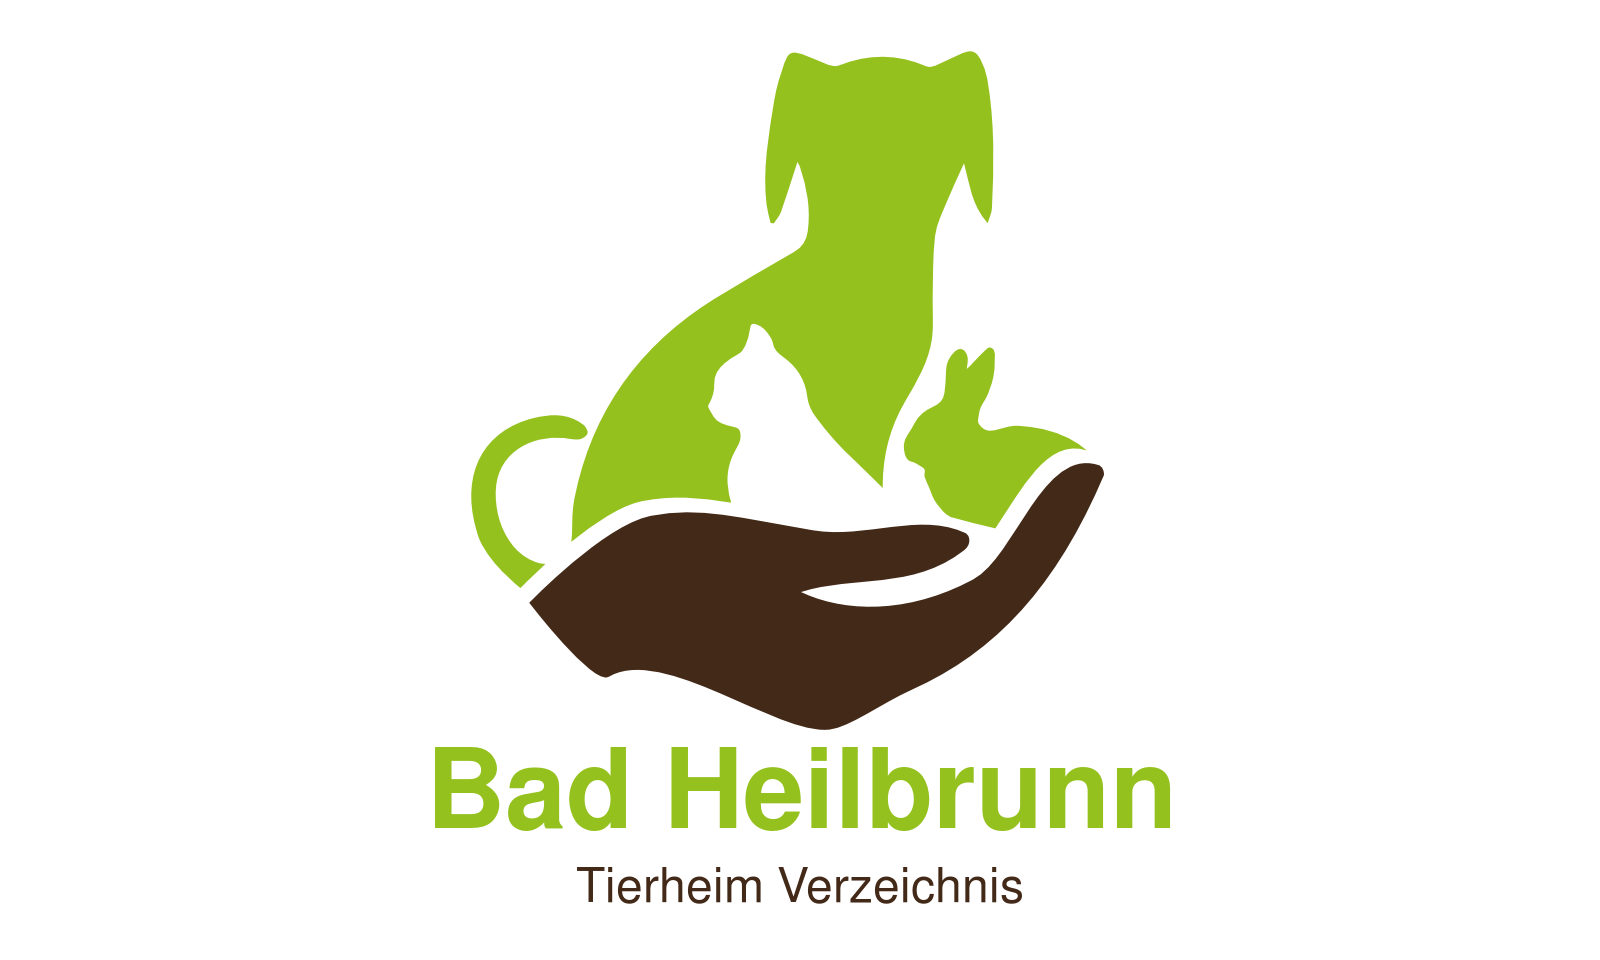 Tierheim Bad Heilbrunn